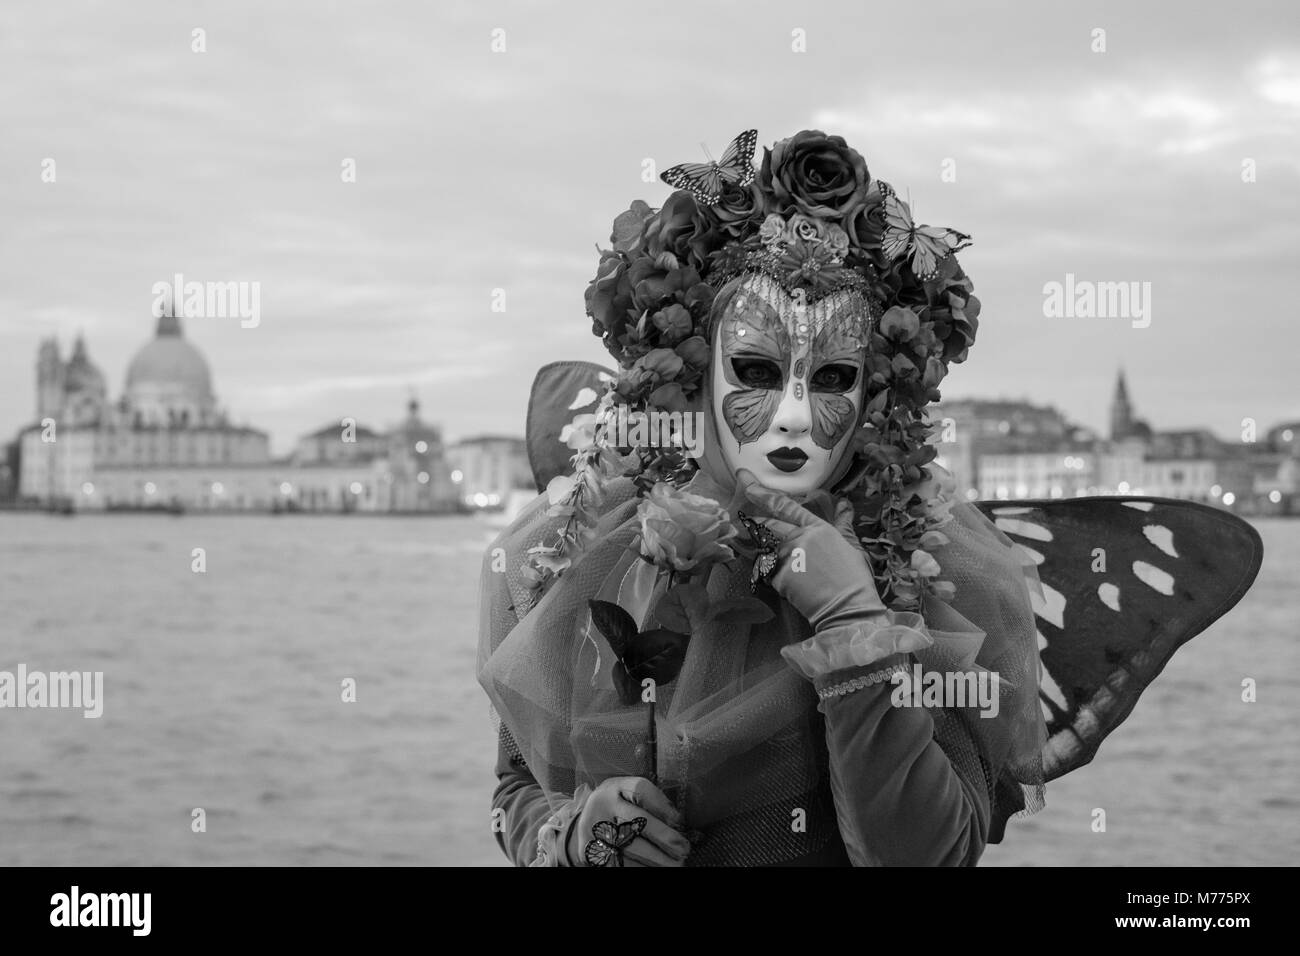 Femme en costume et un masque très ornés avec Basilica di Santa Maria della Salute en arrière-plan. Photo prise lors de l'Carnaval de Venise. Banque D'Images